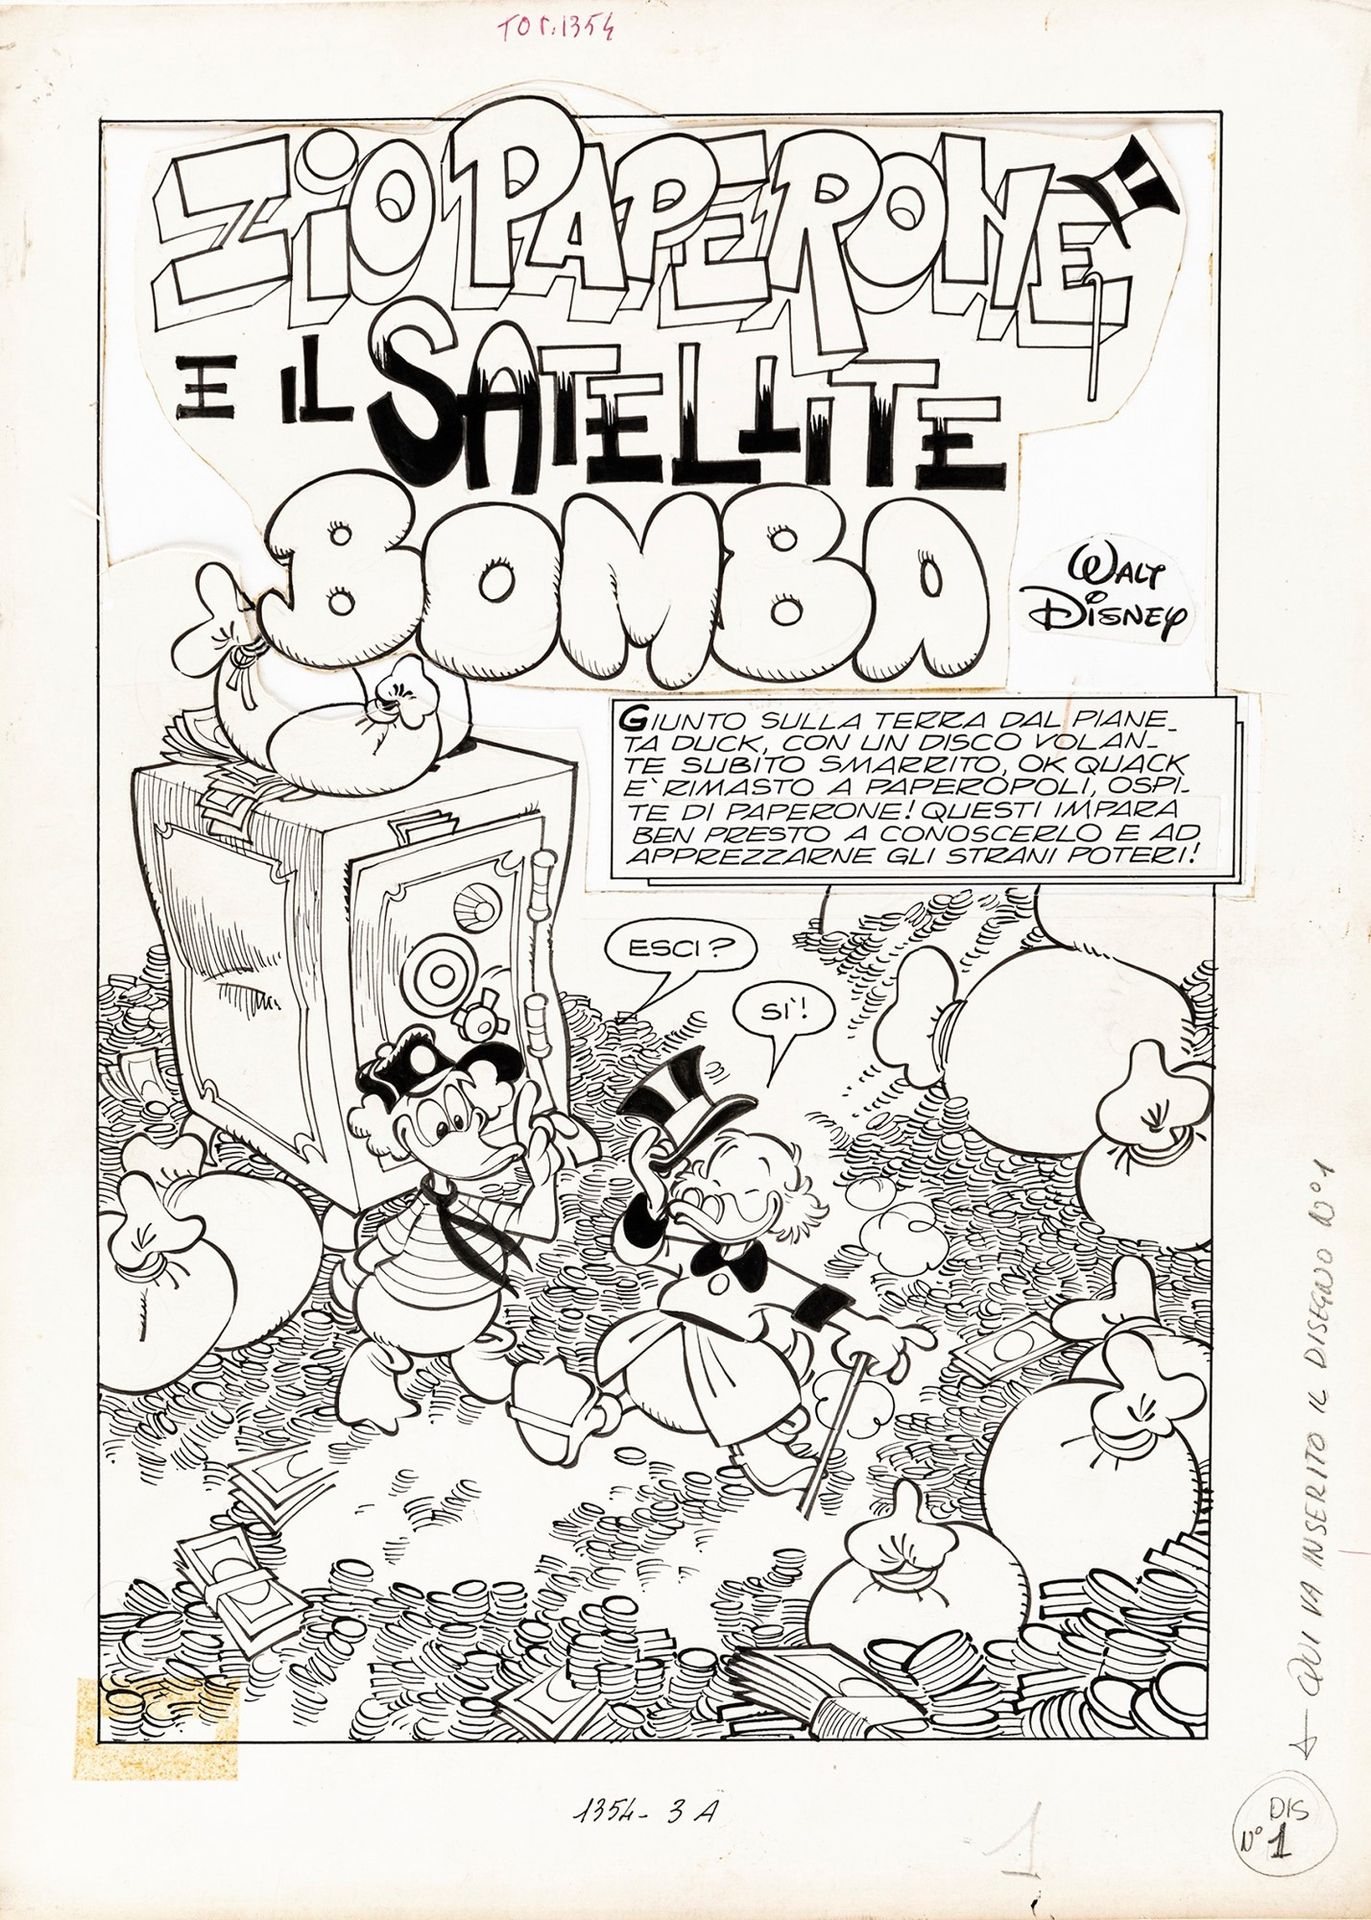 Giorgio Cavazzano Zio Paperone e il satellite bomba, 1981

pencil and ink on thi&hellip;